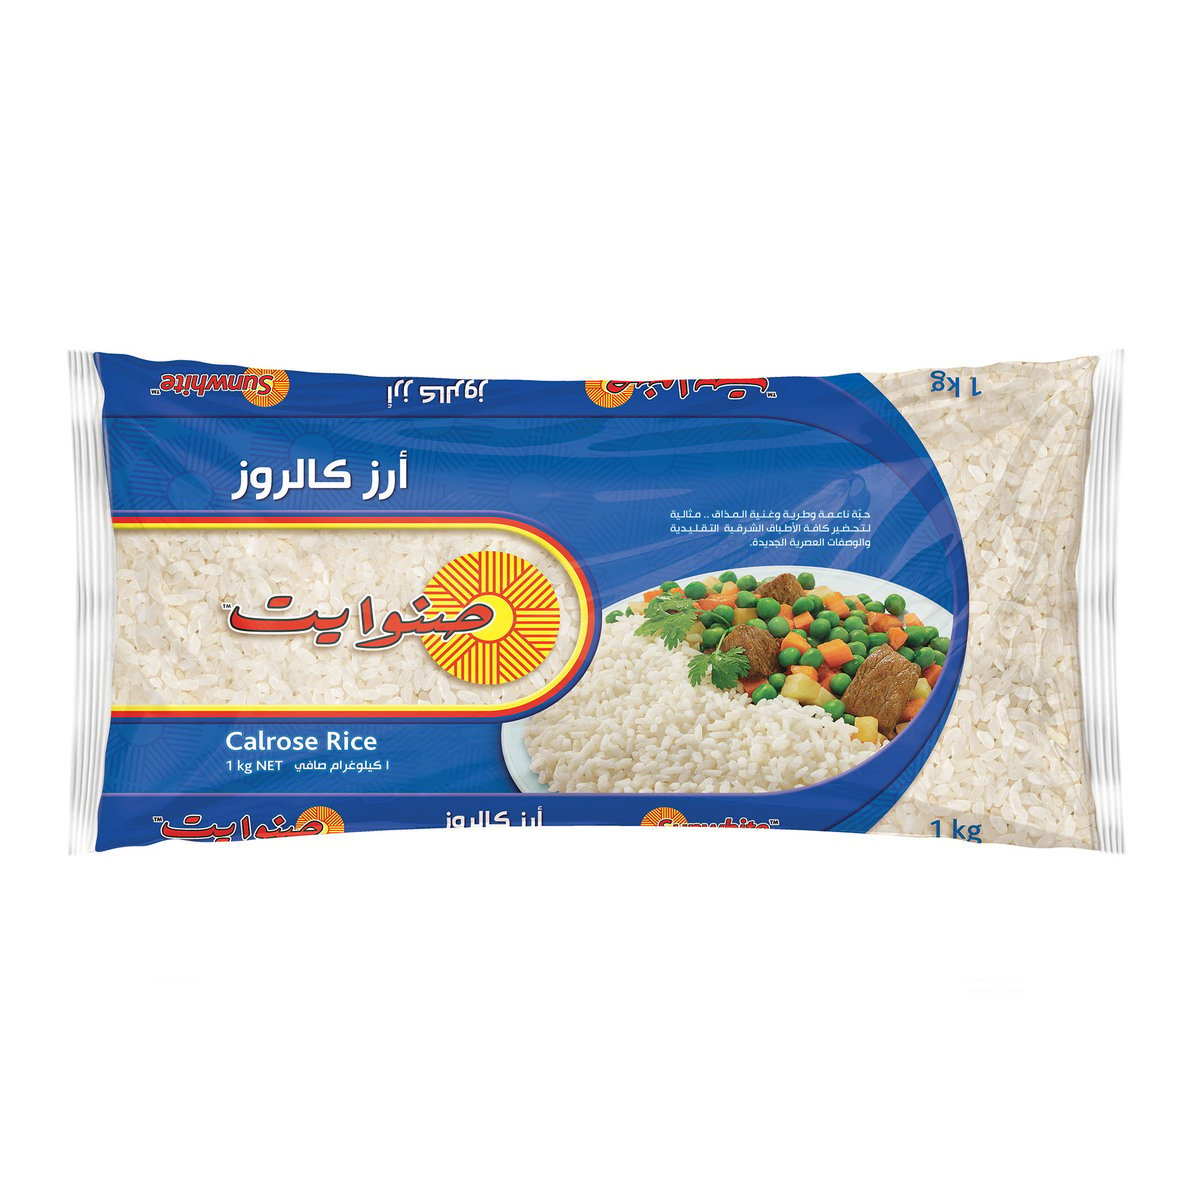 اشتري قم بشراء صن وايت أرز كالروز 1 كجم Online at Best Price من الموقع - من لولو هايبر ماركت Egyptian Rice في السعودية